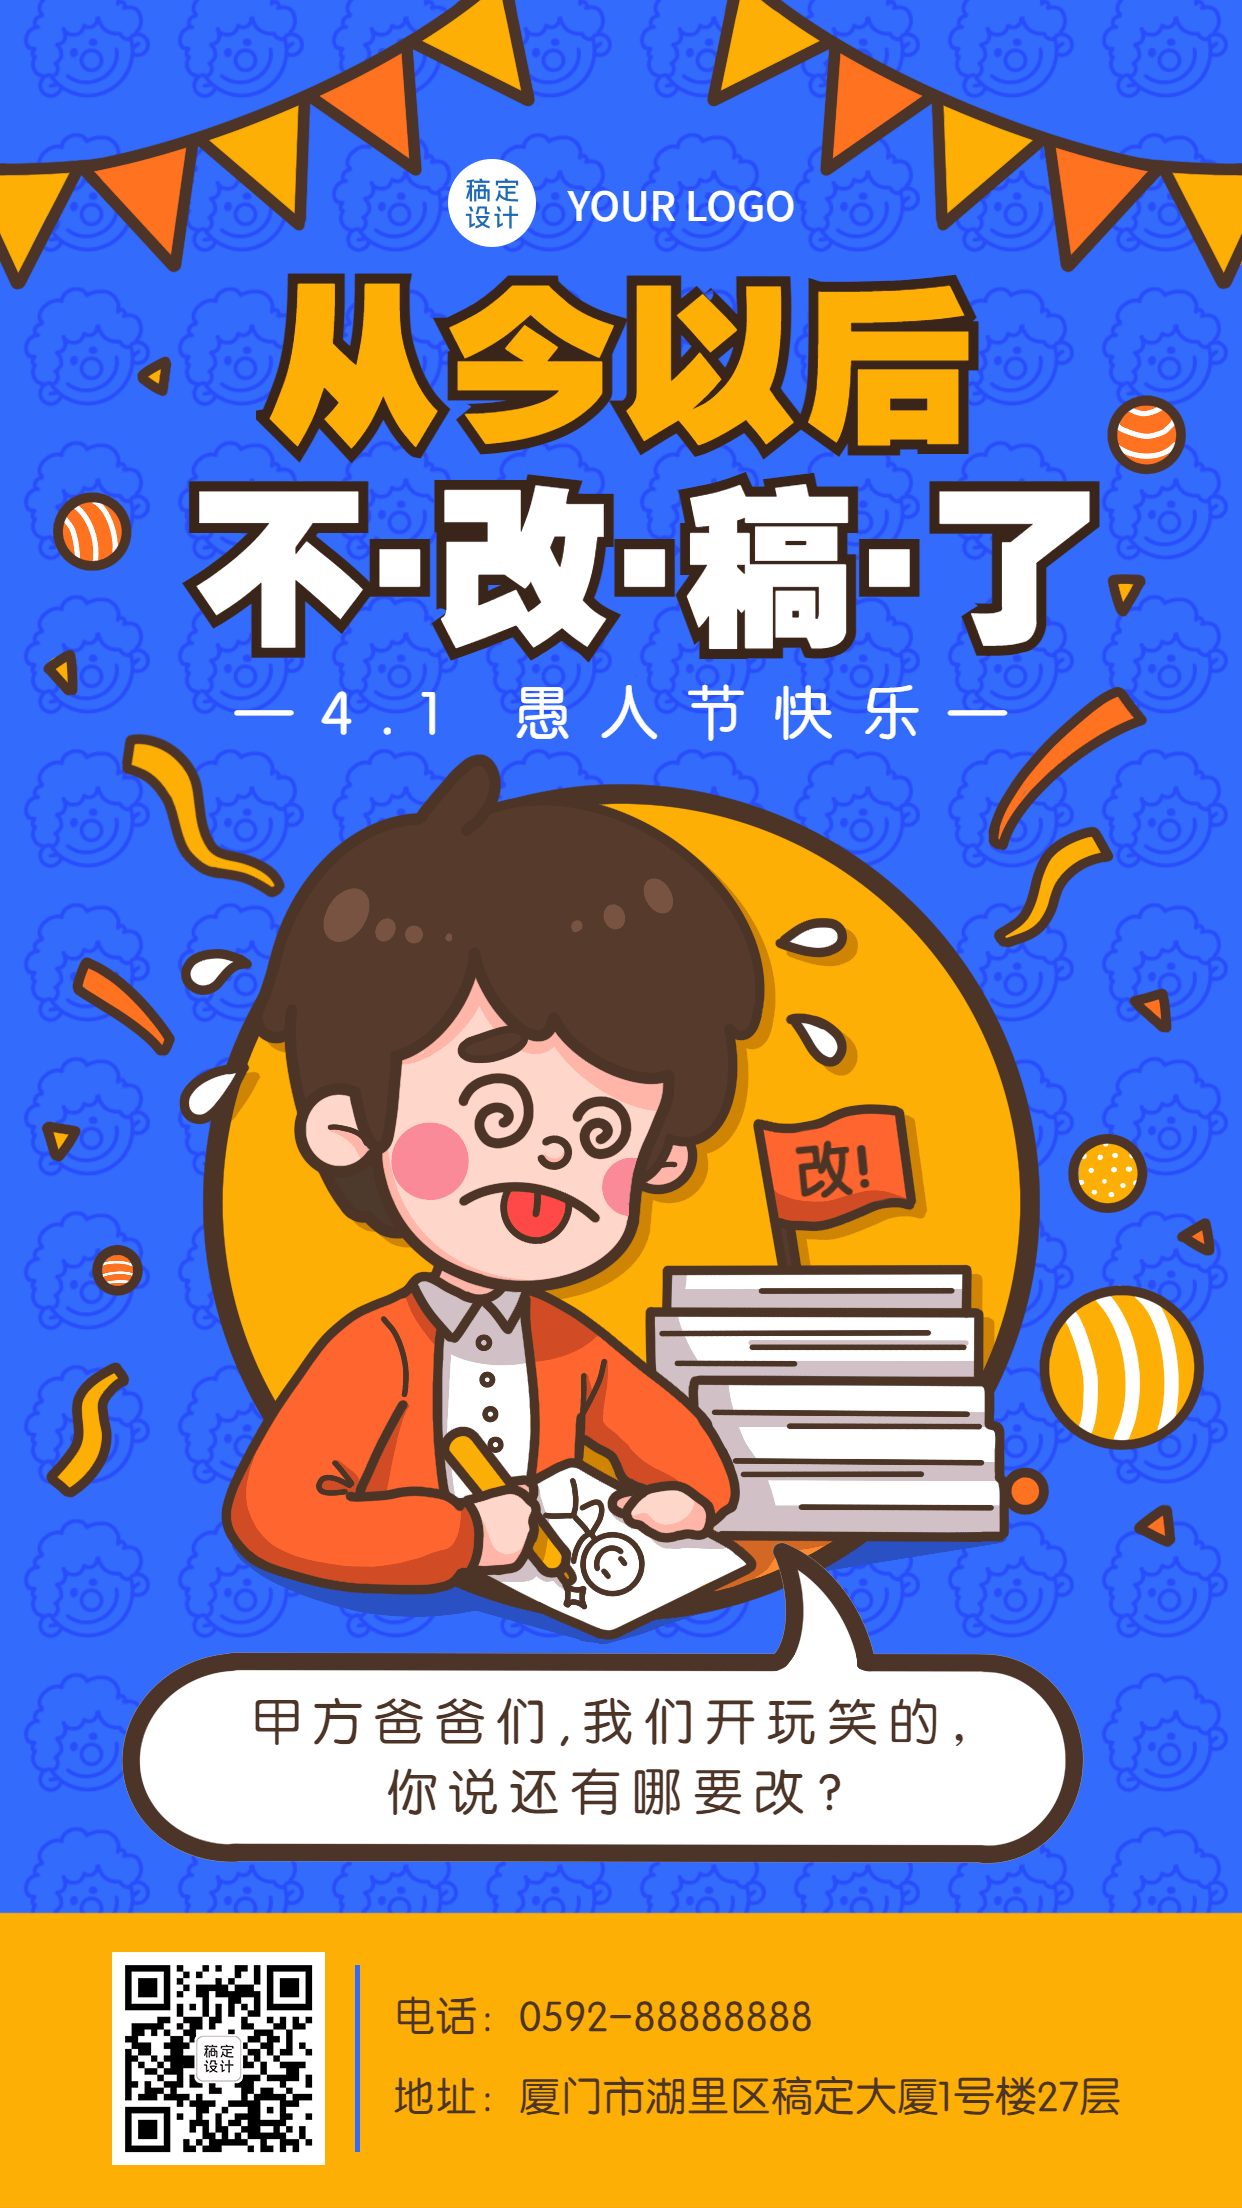 愚人节节日祝福插画系列手机海报预览效果